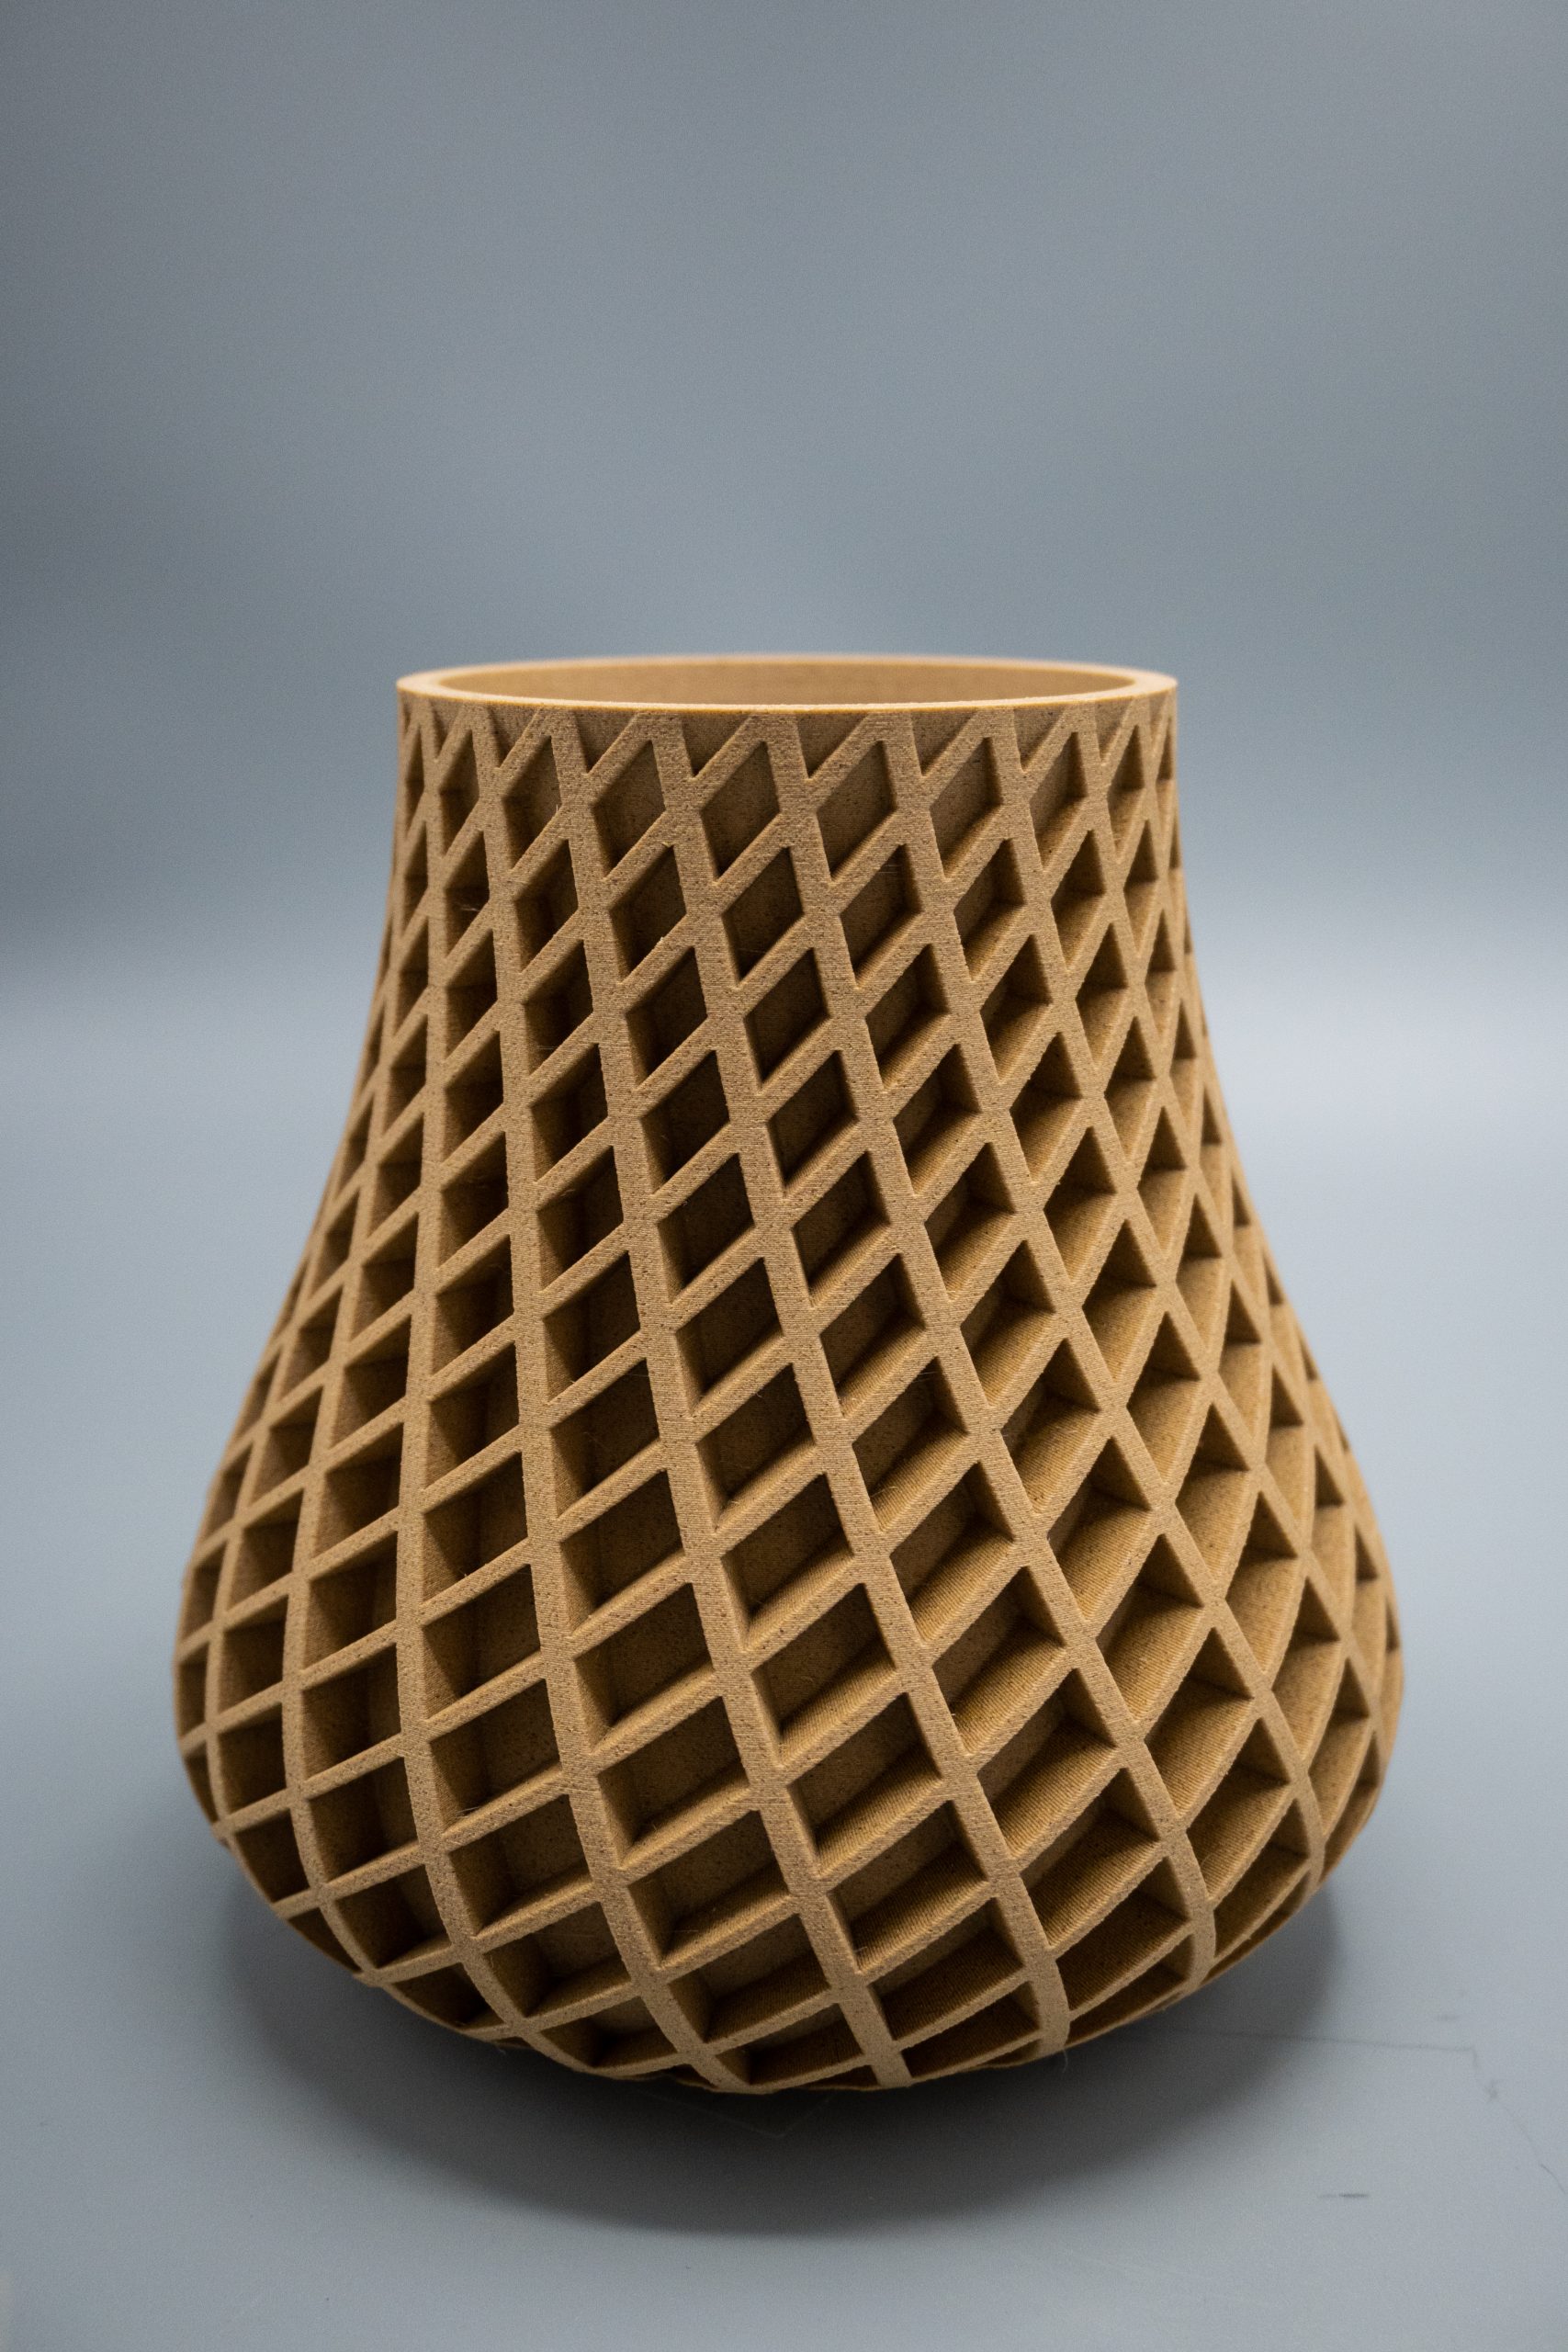 Fortis3D's Lignum PLA filament. Image via Fortis3D.